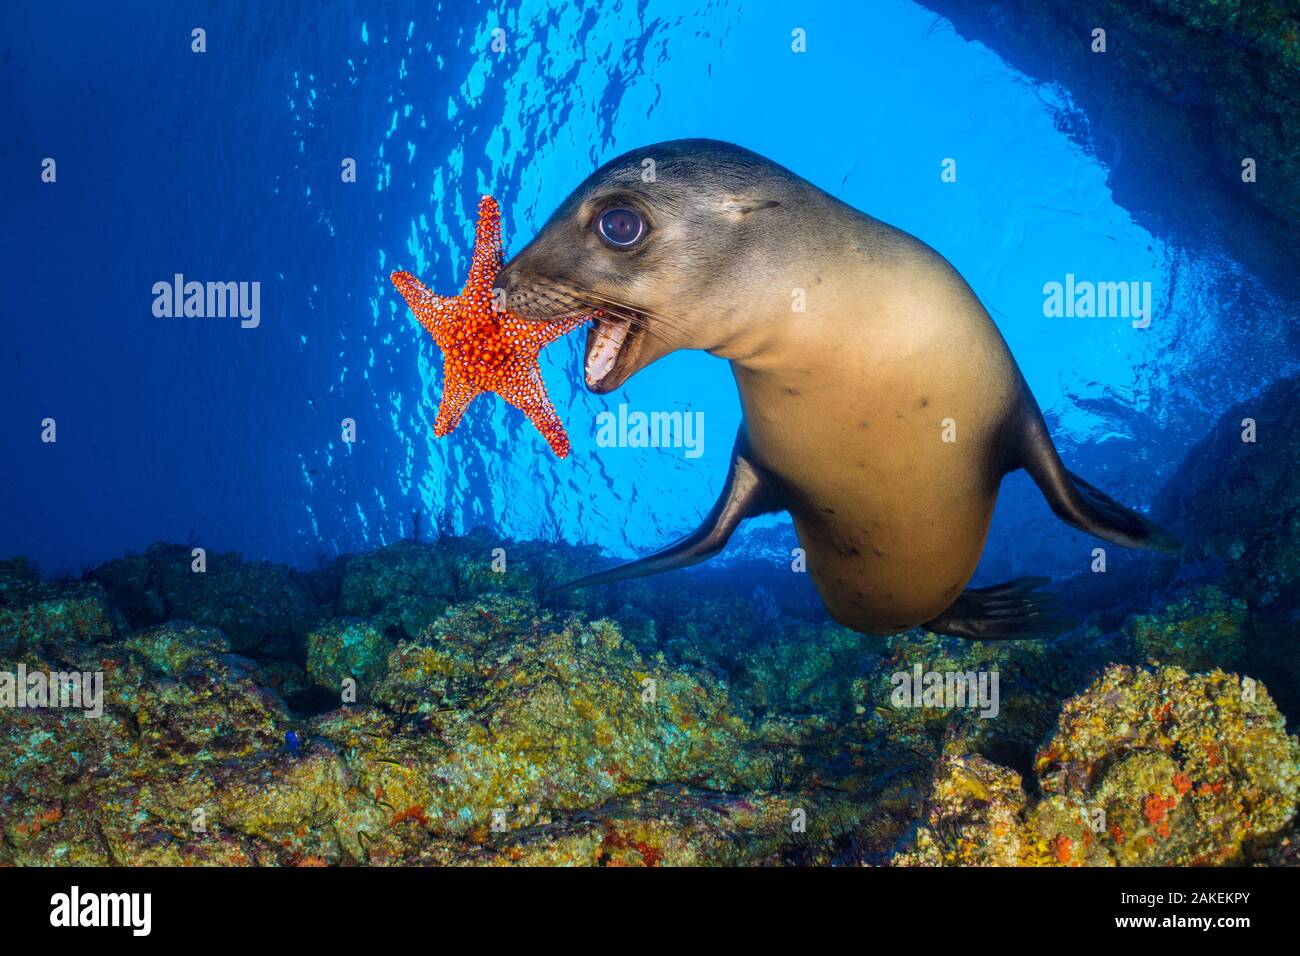 Galapagos-seelöwe (zalophus californianus) verwendet eine Panamic Kissen Star (Pentaceraster cumingi) als Spielzeug. Die seelöwen holen die Seesterne und dann ablegen und jagen nach ihnen, da sie sinken. Los Islotes, La Paz, Baja California Sur, Mexiko. Die See von Cortez, Golf von Kalifornien, Ost Pazifik. Stockfoto